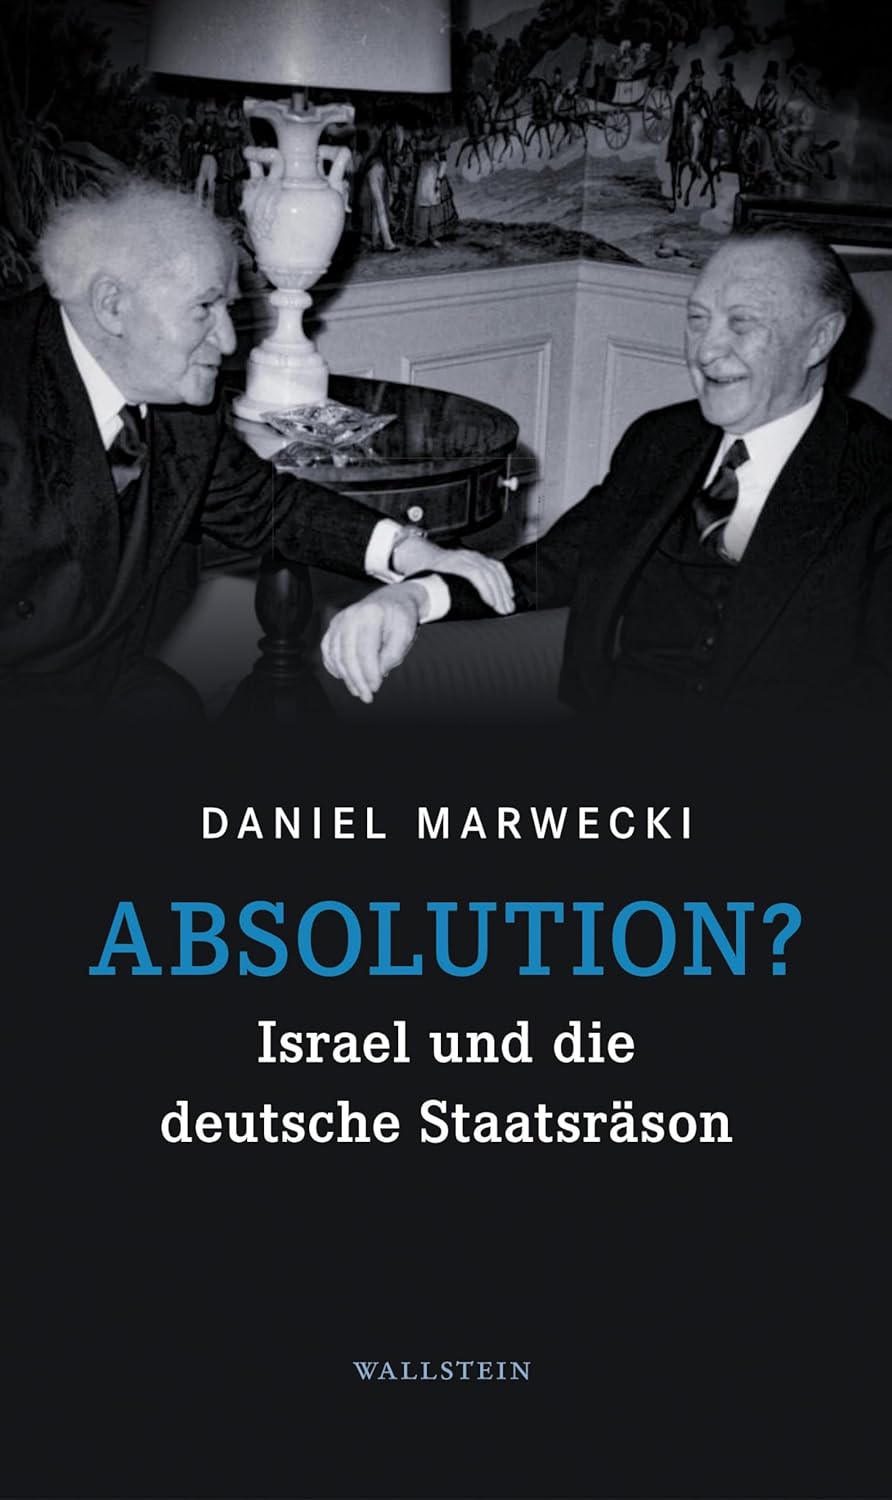 Cover of the book "Absolution? Israel und die deutsche Staatsräson" by Daniel Marwecki